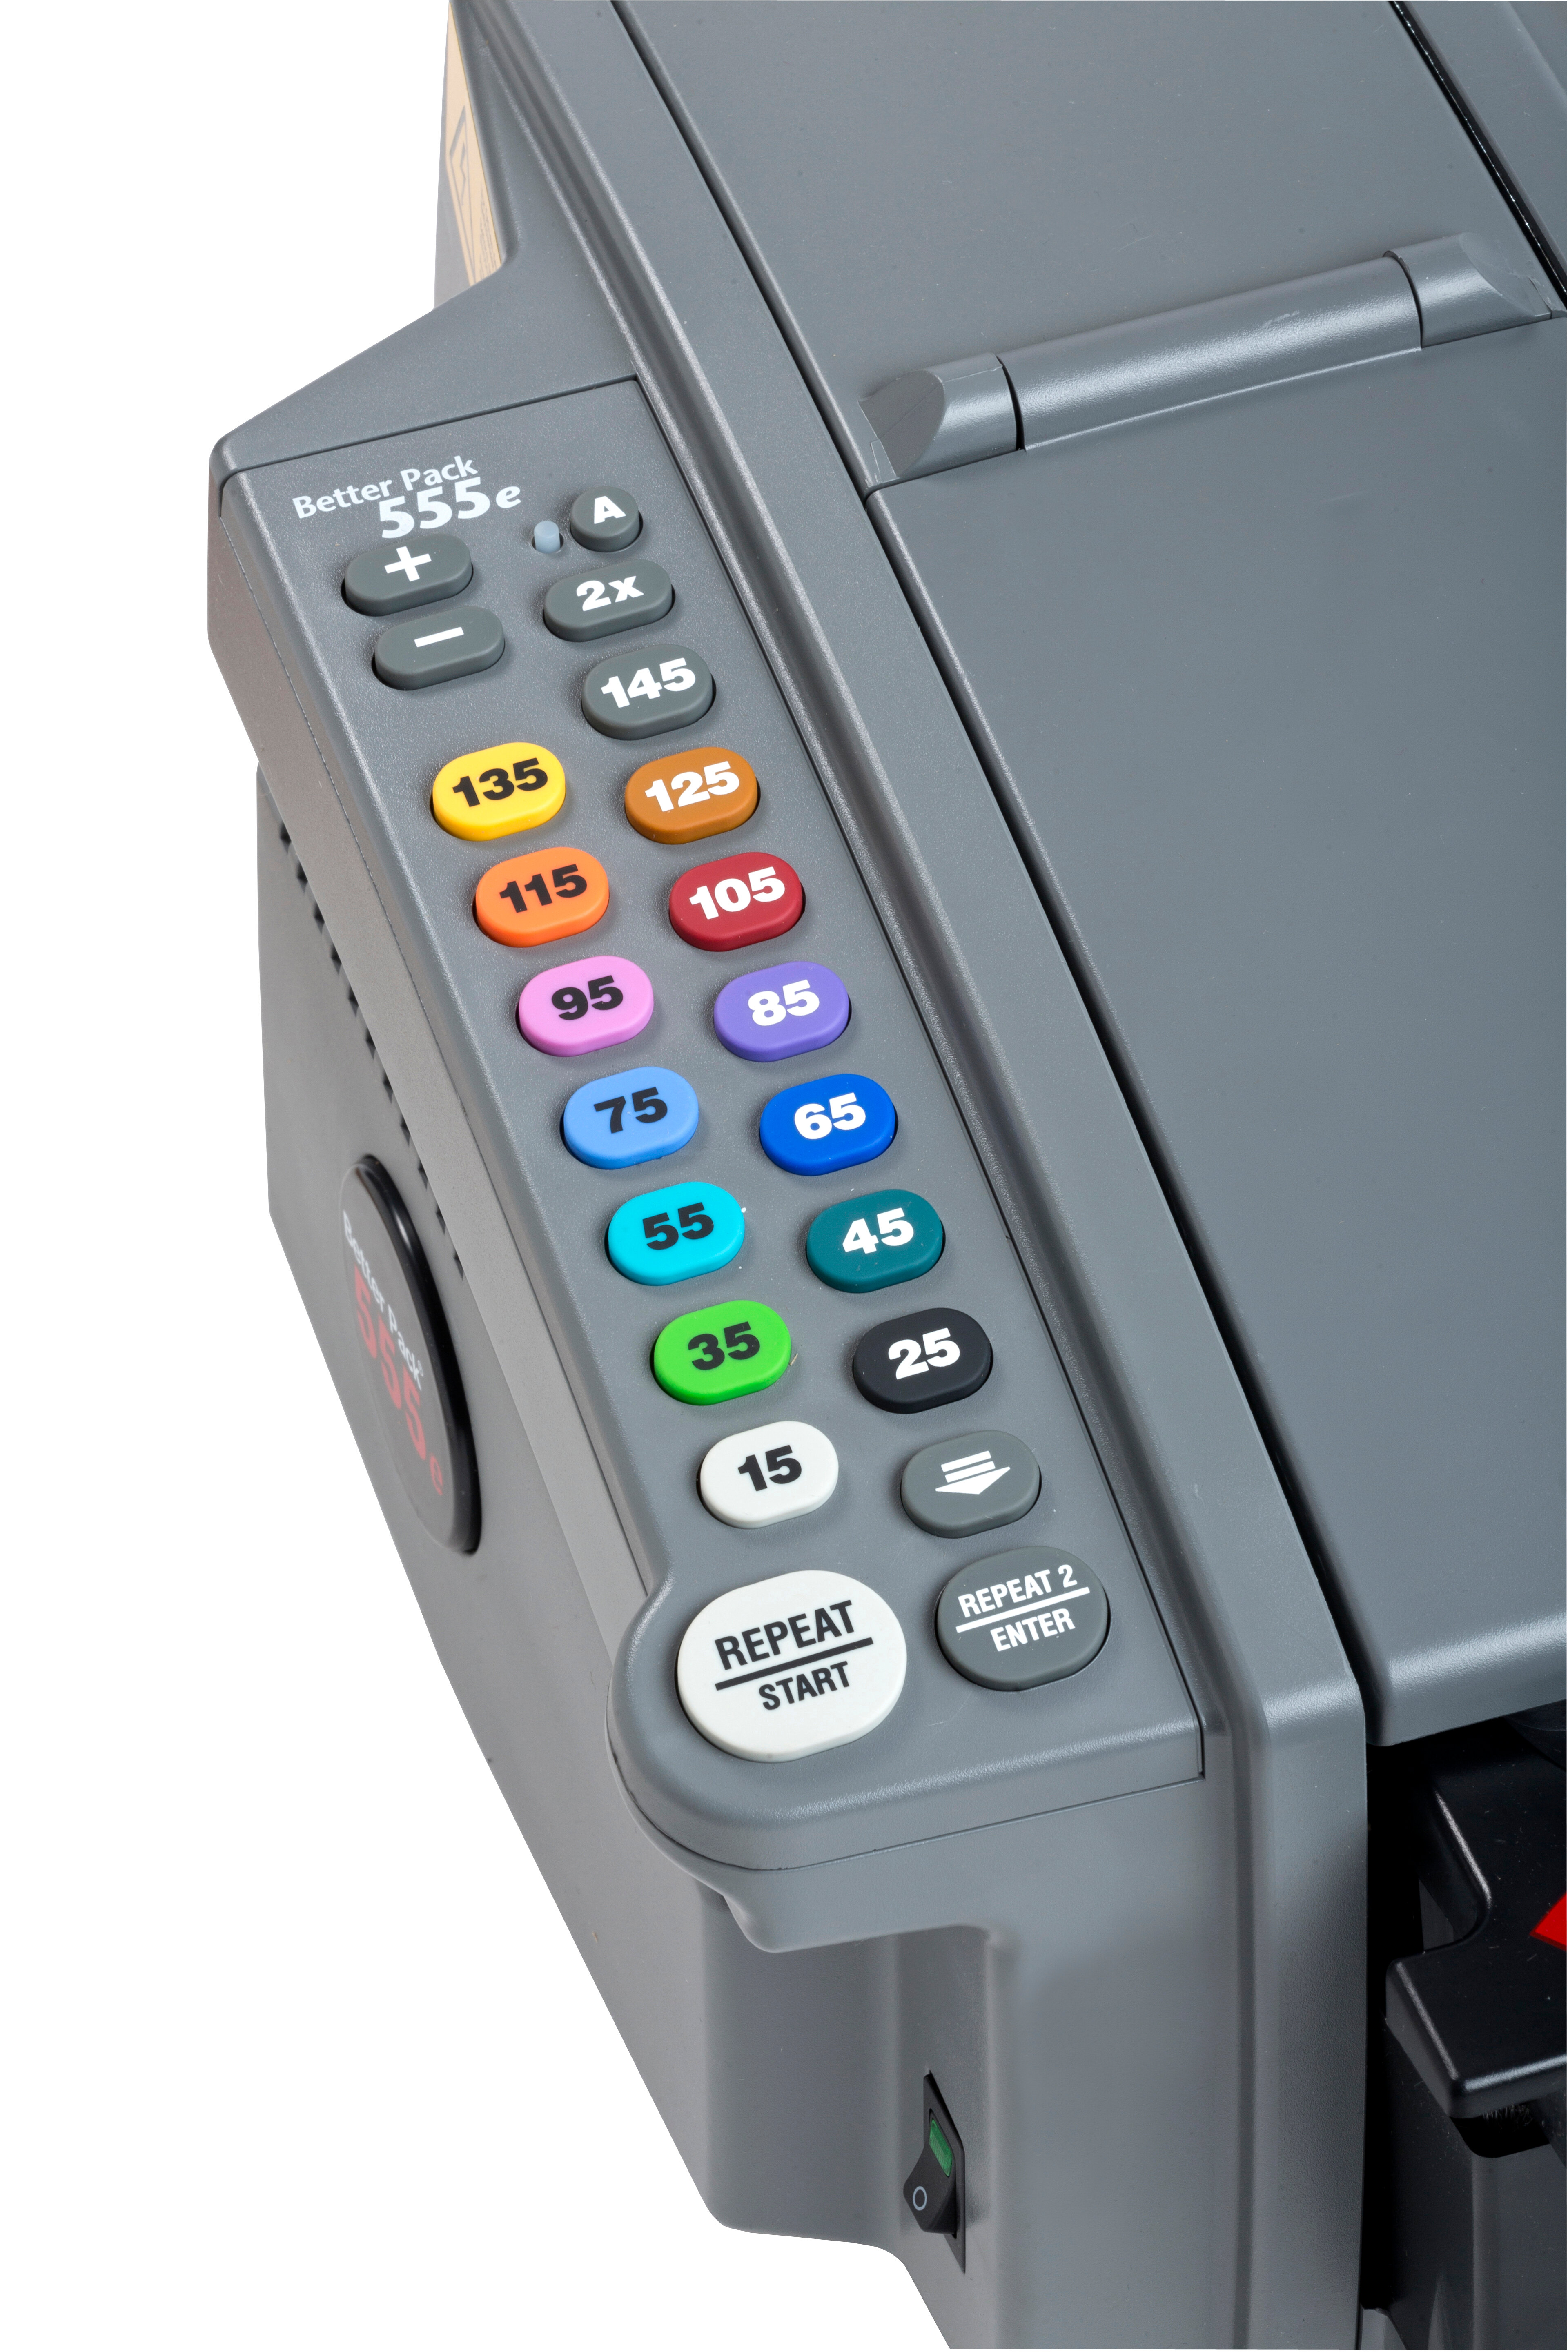 Betterpack 555e - Elektronische dispenser voor gegomde tape